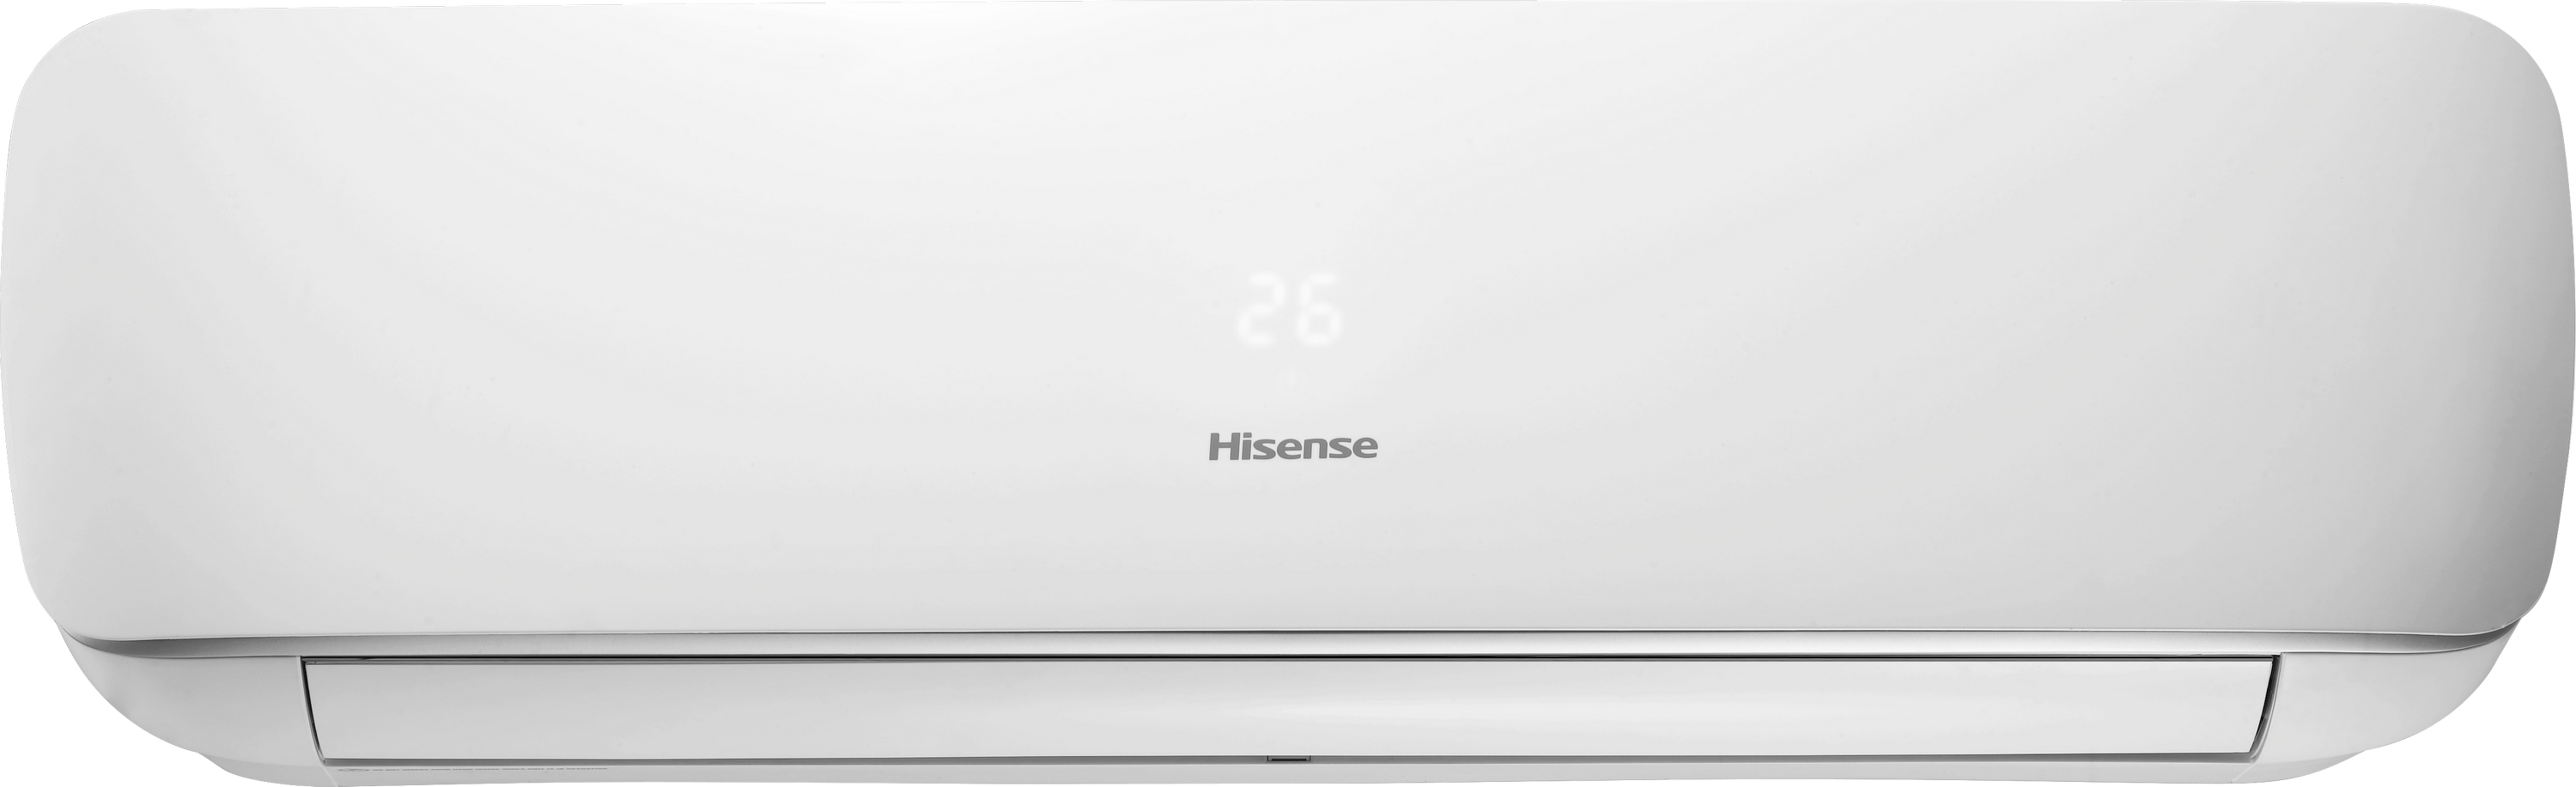 Кондиціонер спліт-система Hisense Apple Pie R32 TG50XA0A ціна 0.00 грн - фотографія 2